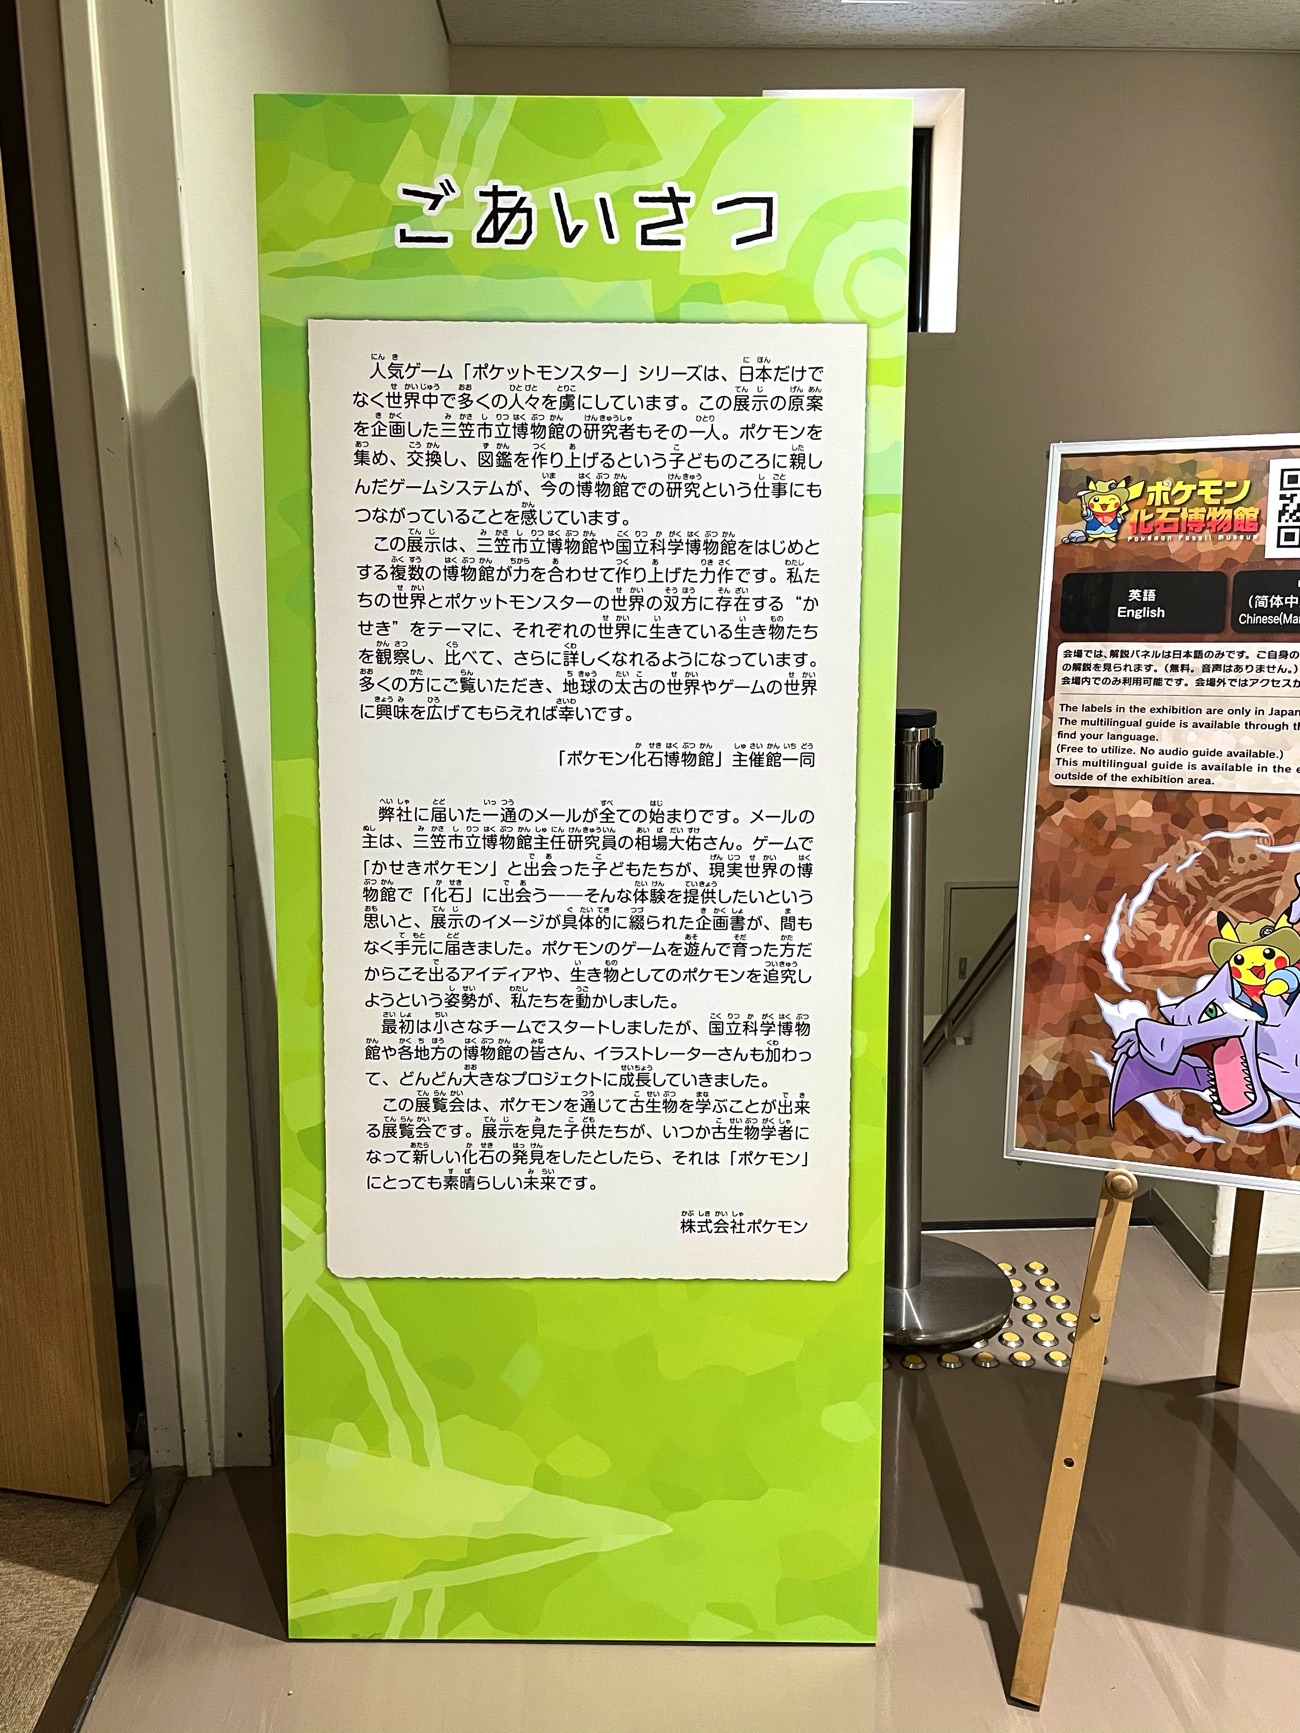 「ポケモン化石博物館」開催のキッカケ